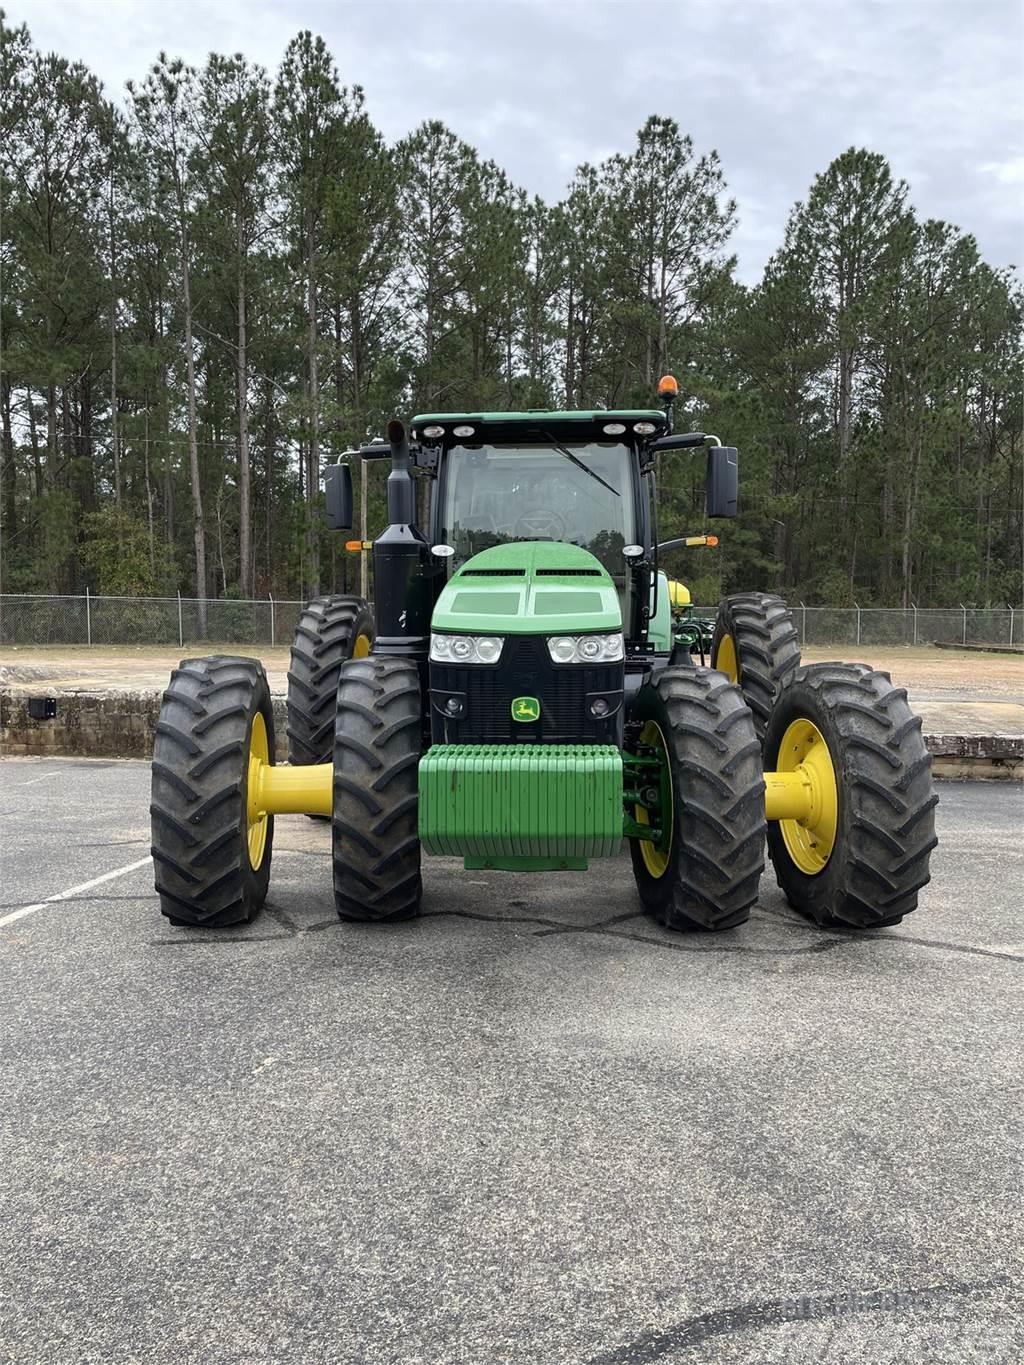 John Deere 8370R Tractores